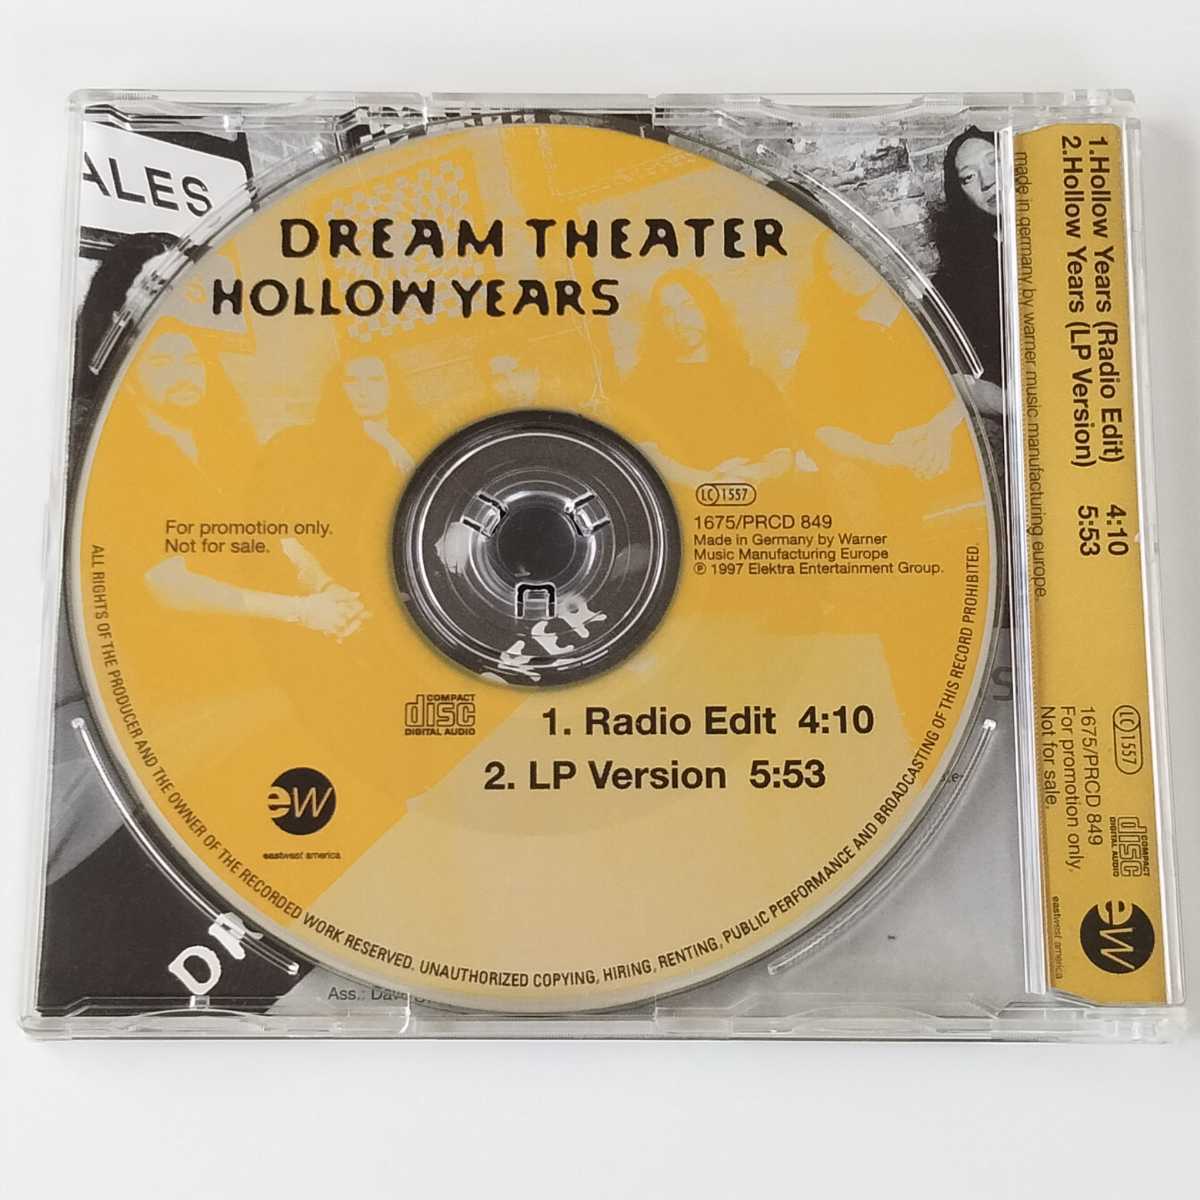 【独盤 Promo Only ジャケット１枚おまけ】Dream Theater / Hollow Years (1675/PRCD 849) ドリーム・シアター_画像2